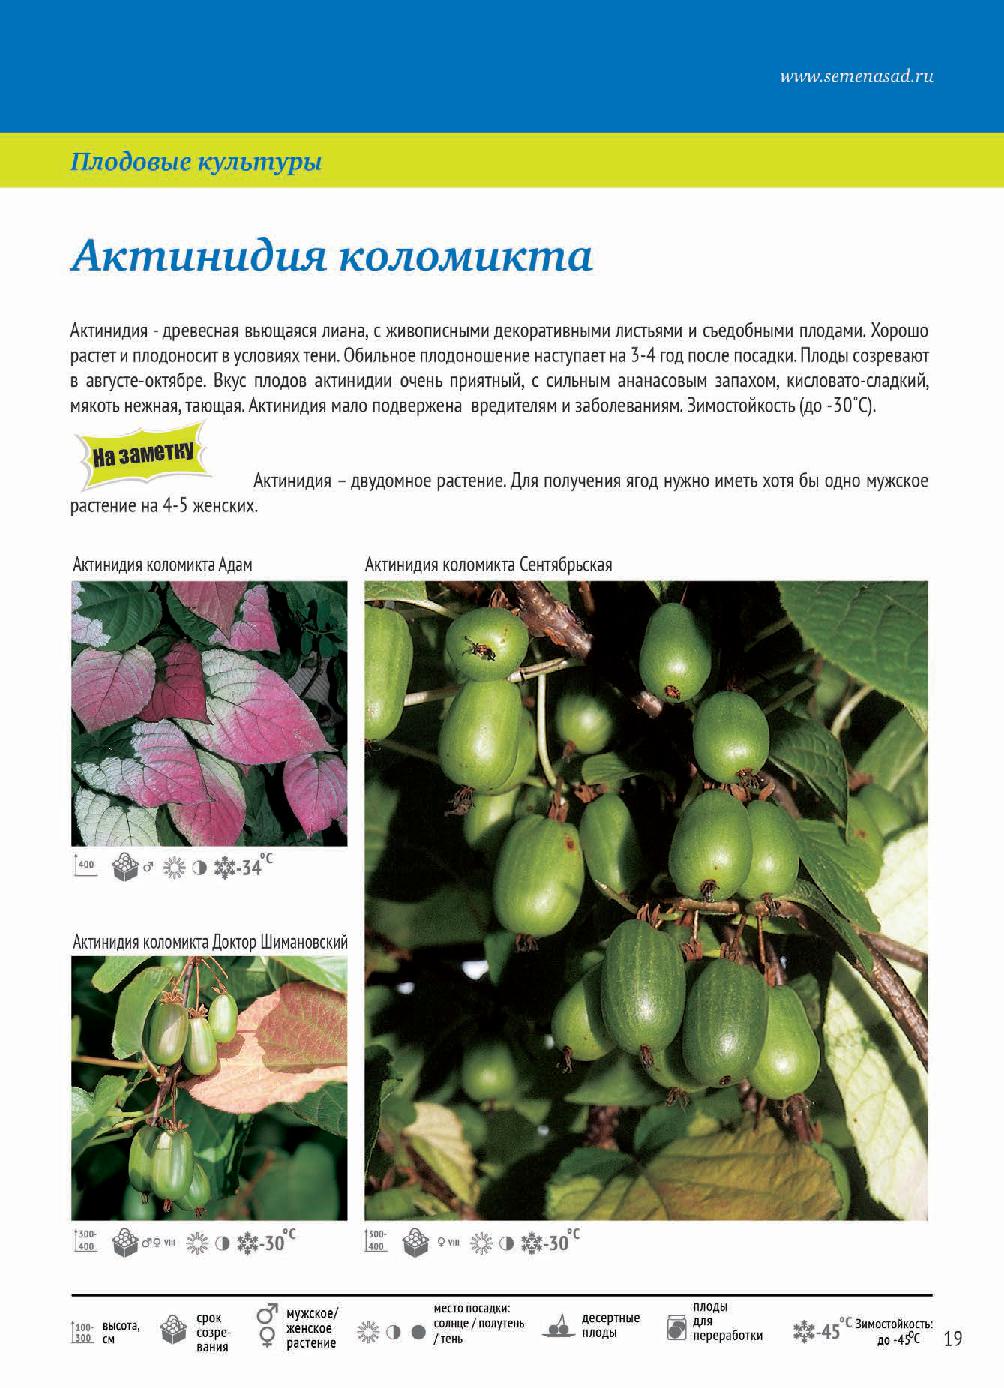 Выращивание актинидии коломикты: посадка и уход в открытом грунте, размножение и подготовка к зиме